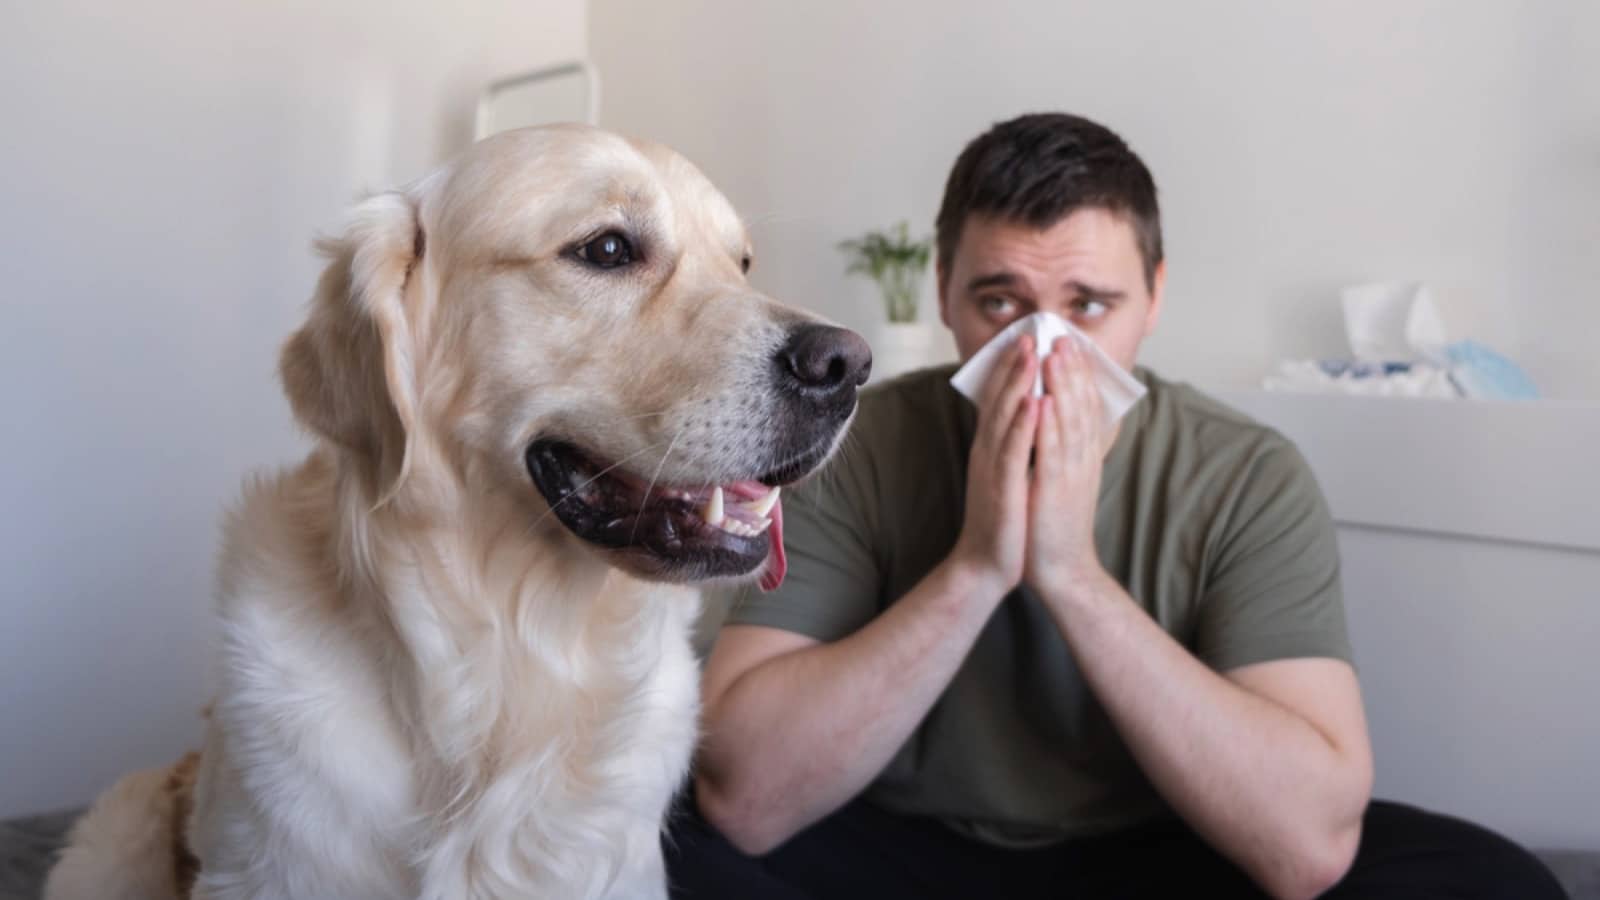 Man with dog sneezing